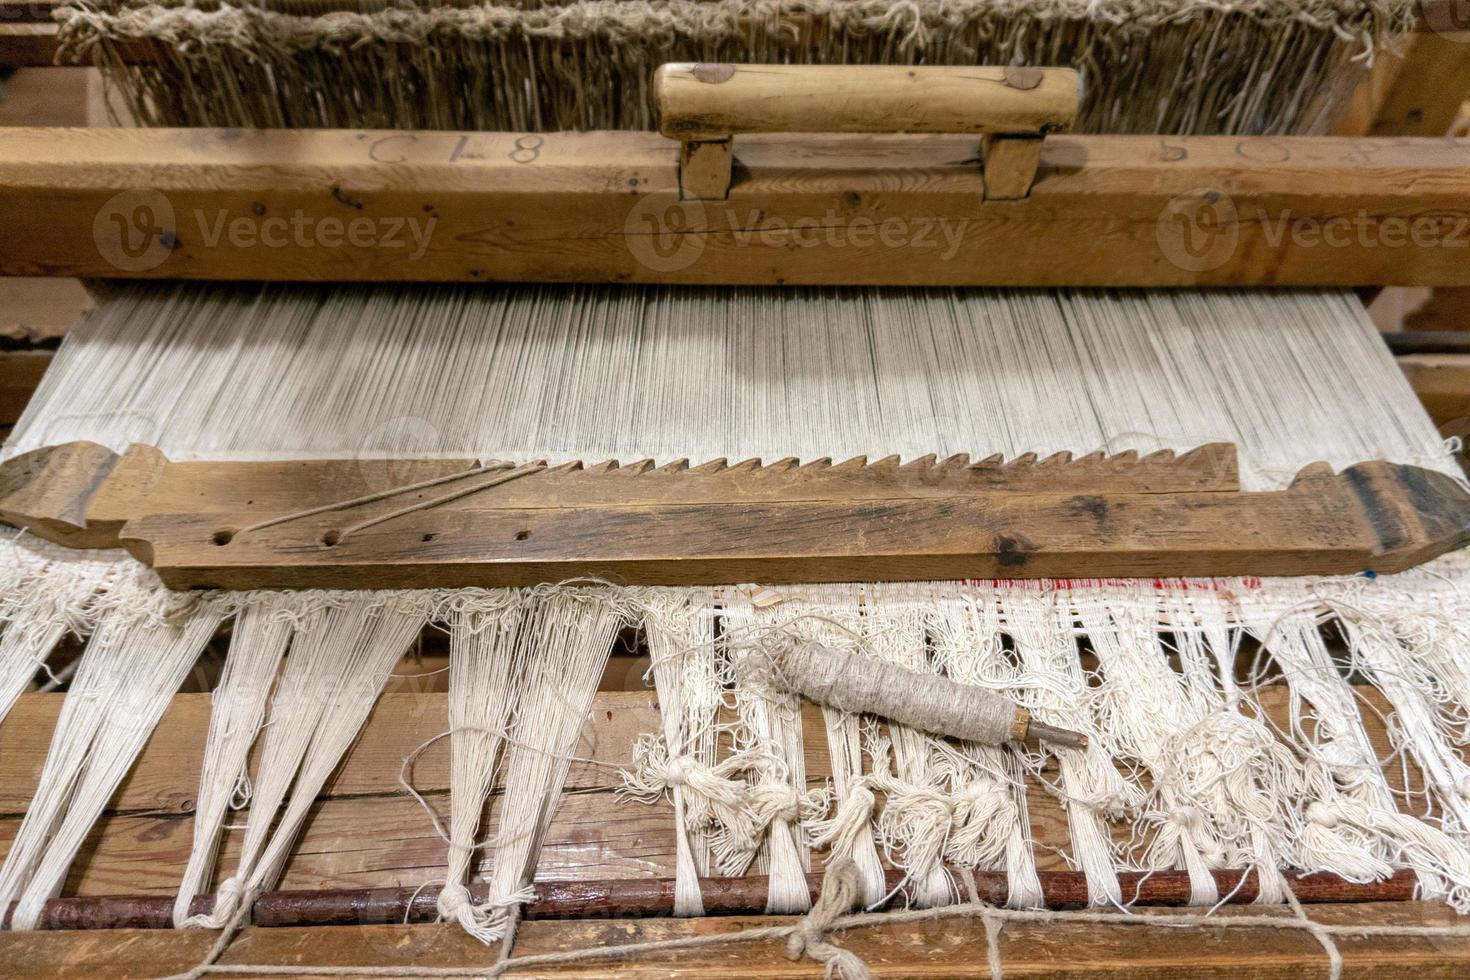 oud weefgetouw antiek het weven naaien machine detail foto